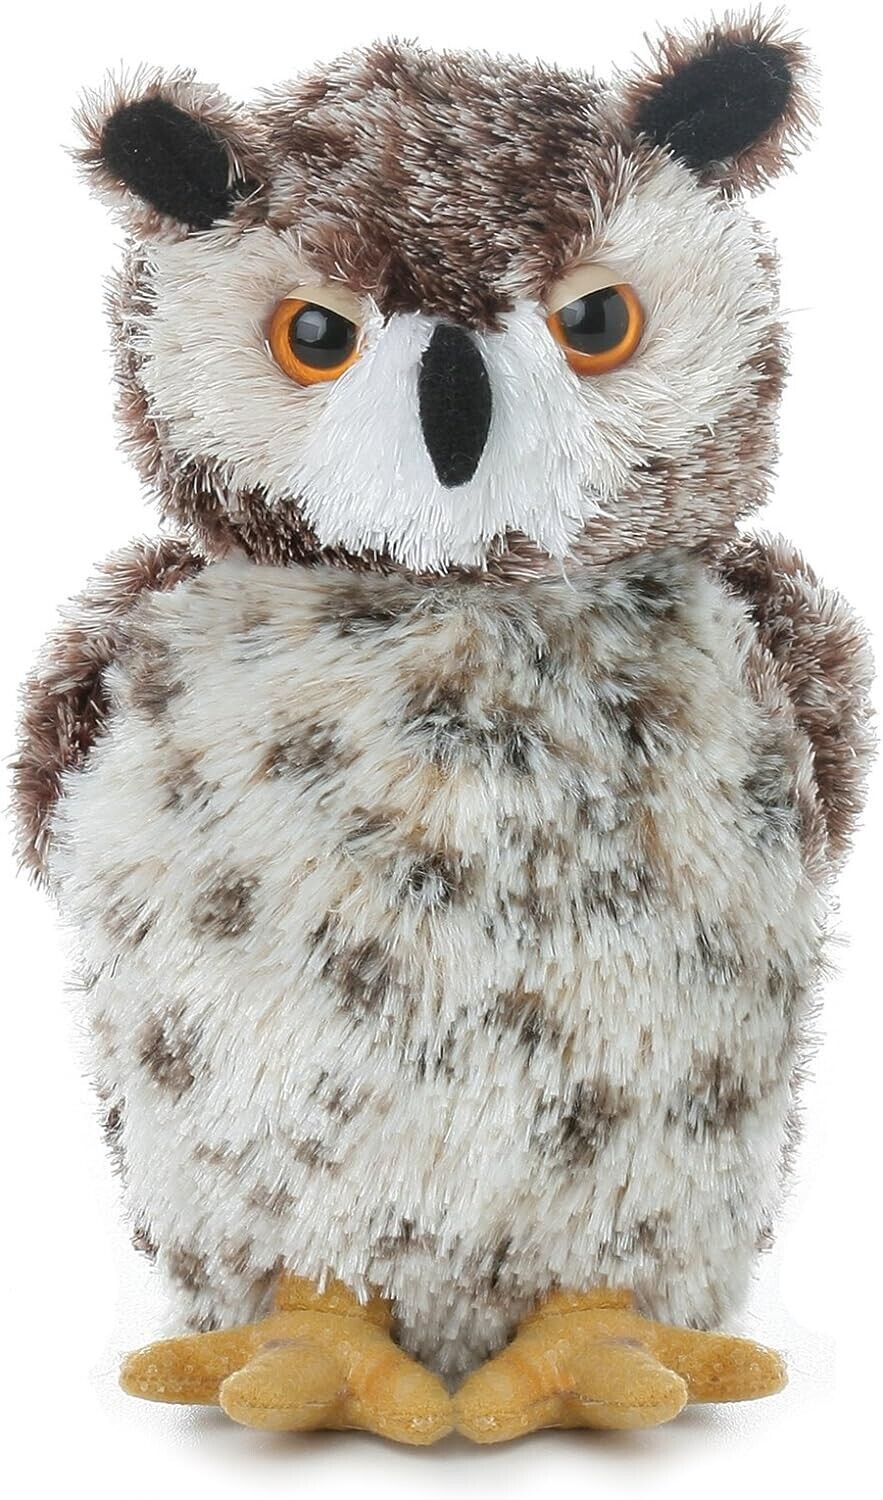 Aurora, 30535, Mini Flopsie Osmond Owl, 8In, Soft Toy, White and Brown, Medium